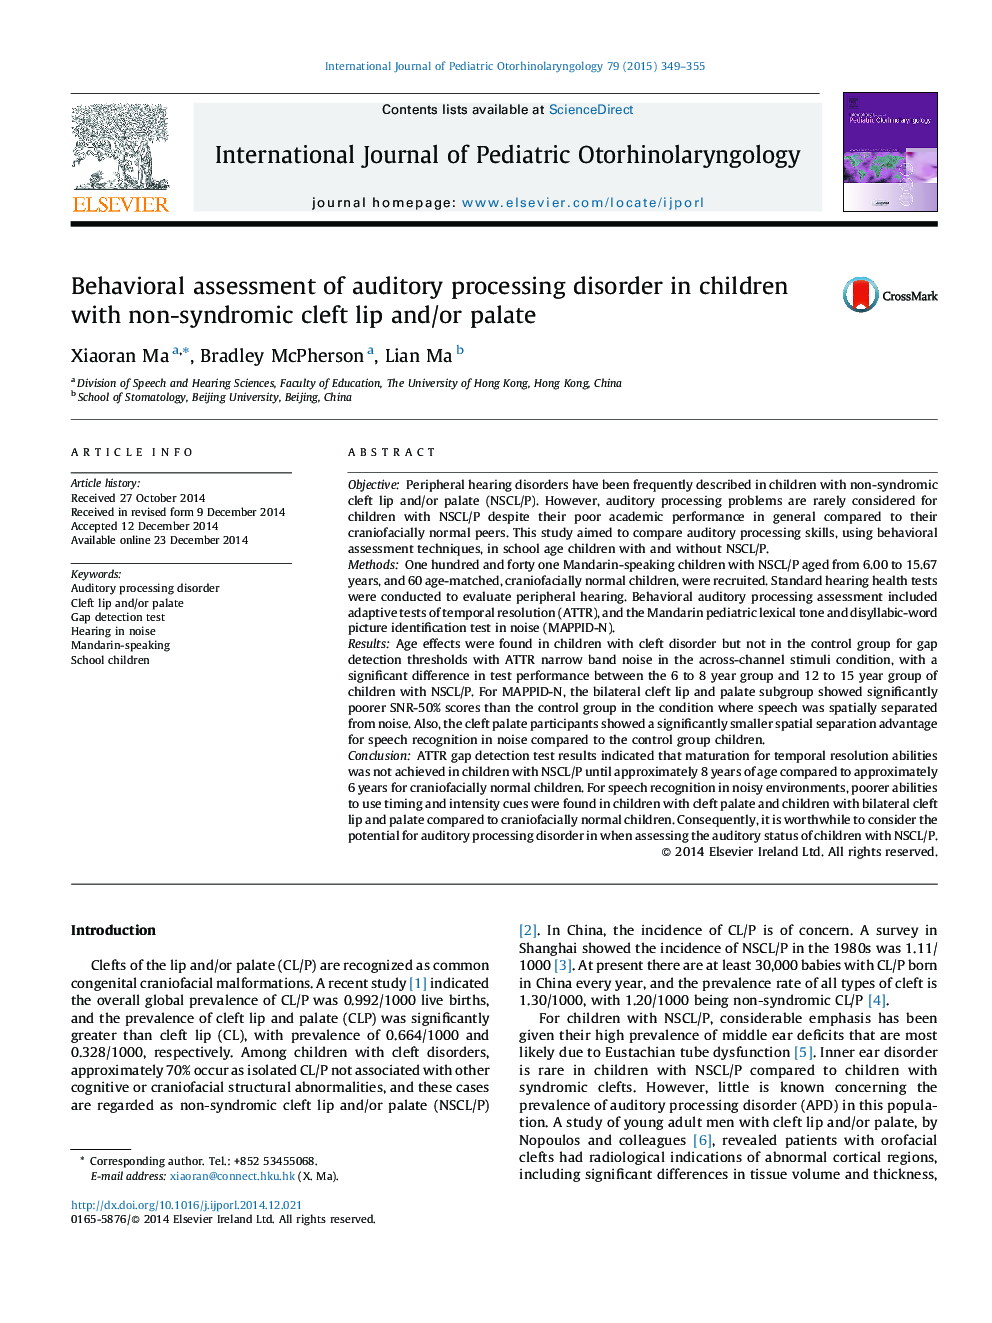 ارزیابی رفتاری از اختلال پردازش شنوایی در کودکان مبتلا به لب های شکاف غیر سندرمی و / یا کام 